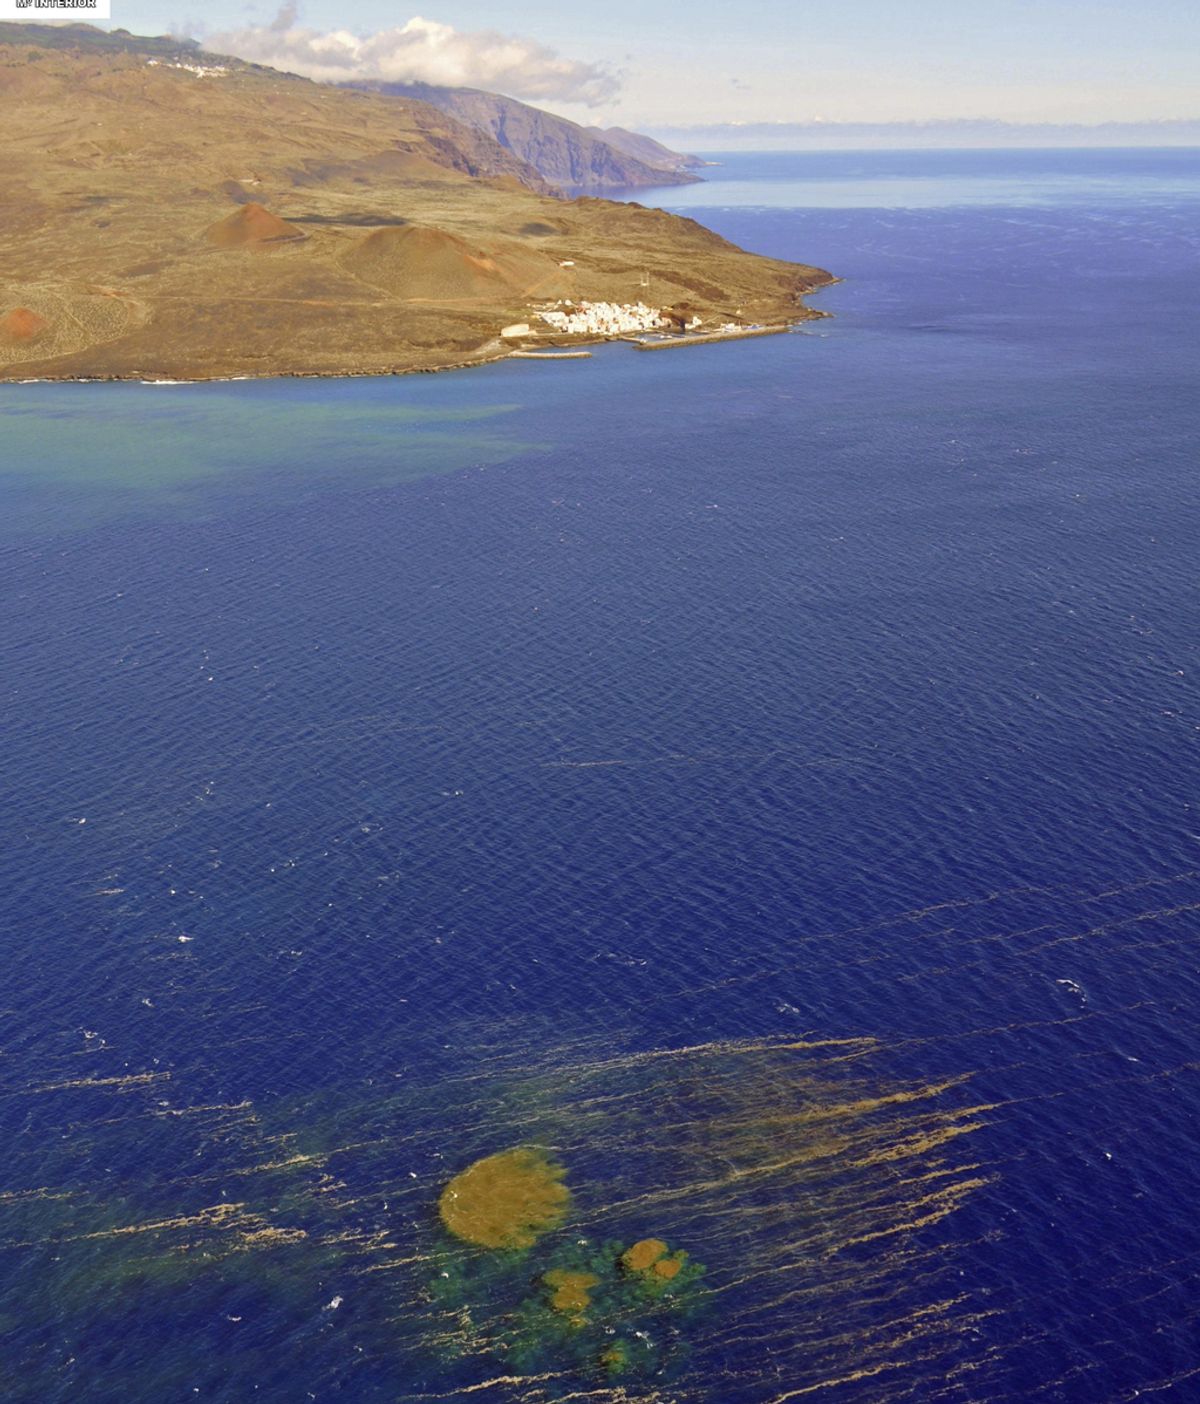 Fotografía facilitada por la Guadia Civil del aspecto que mostraban las manchas en el mar producto de los materiales expulsados tras la erupción submarina de la isla de El Hierro (Canarias)